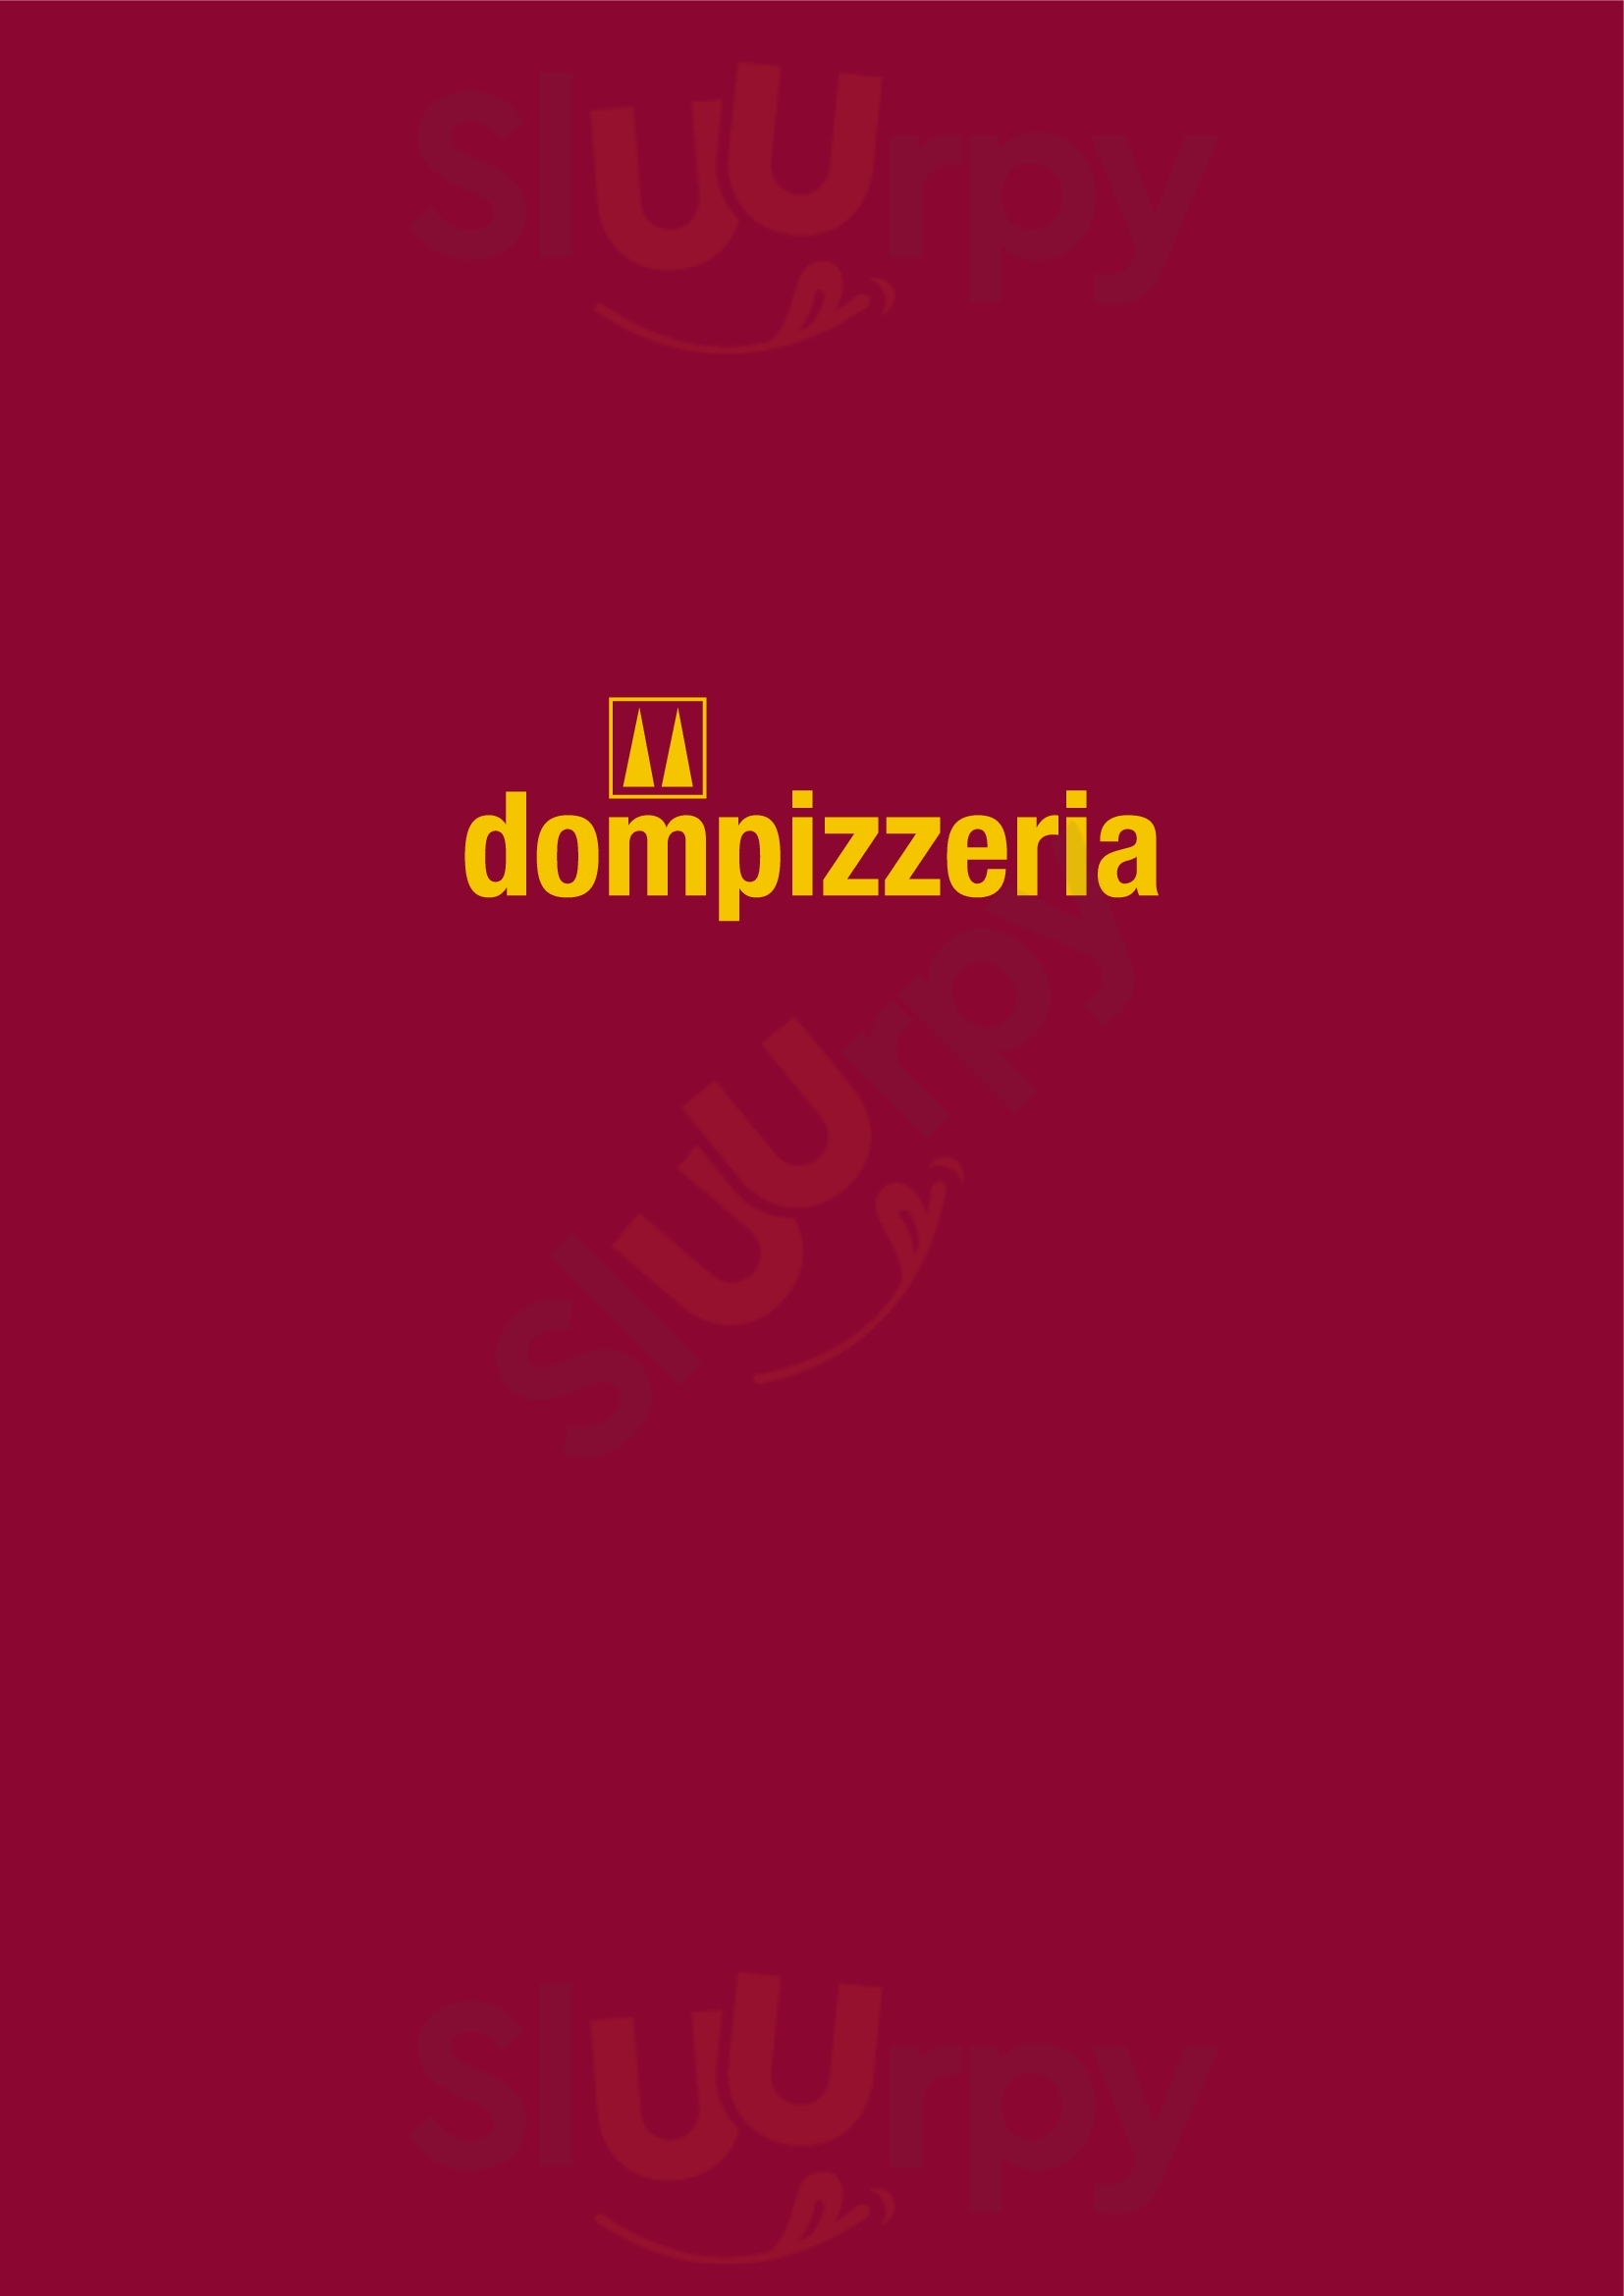 Dompizzeria Wiener Neustadt Menu - 1